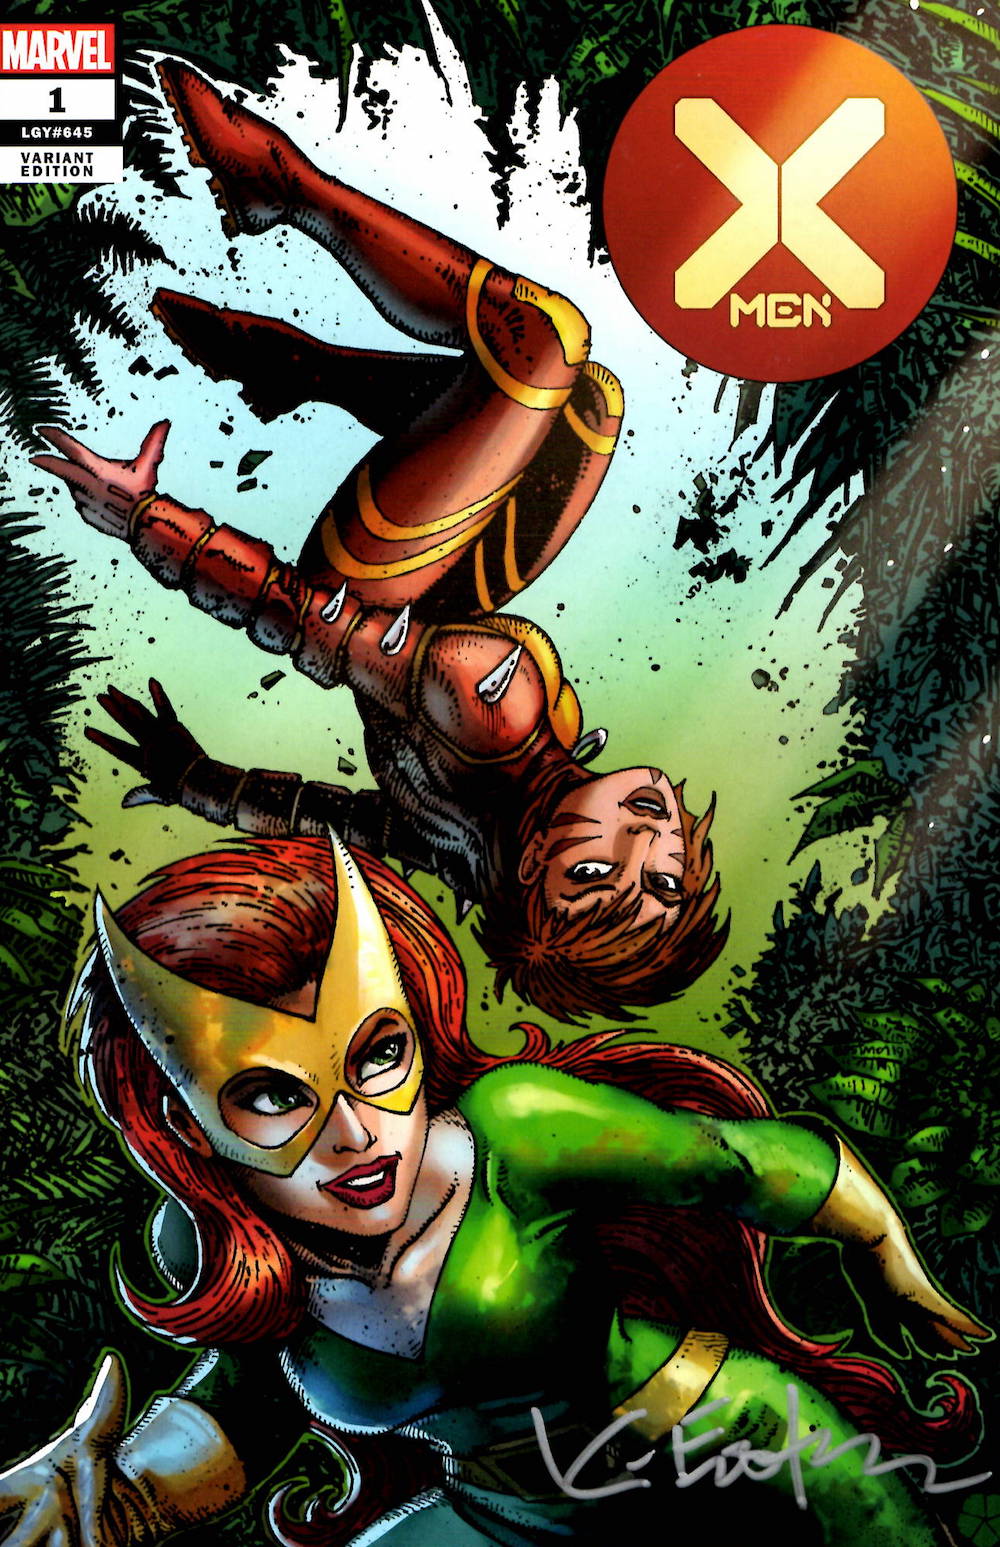 X-MEN Issue 1 – COVER ROUGH E